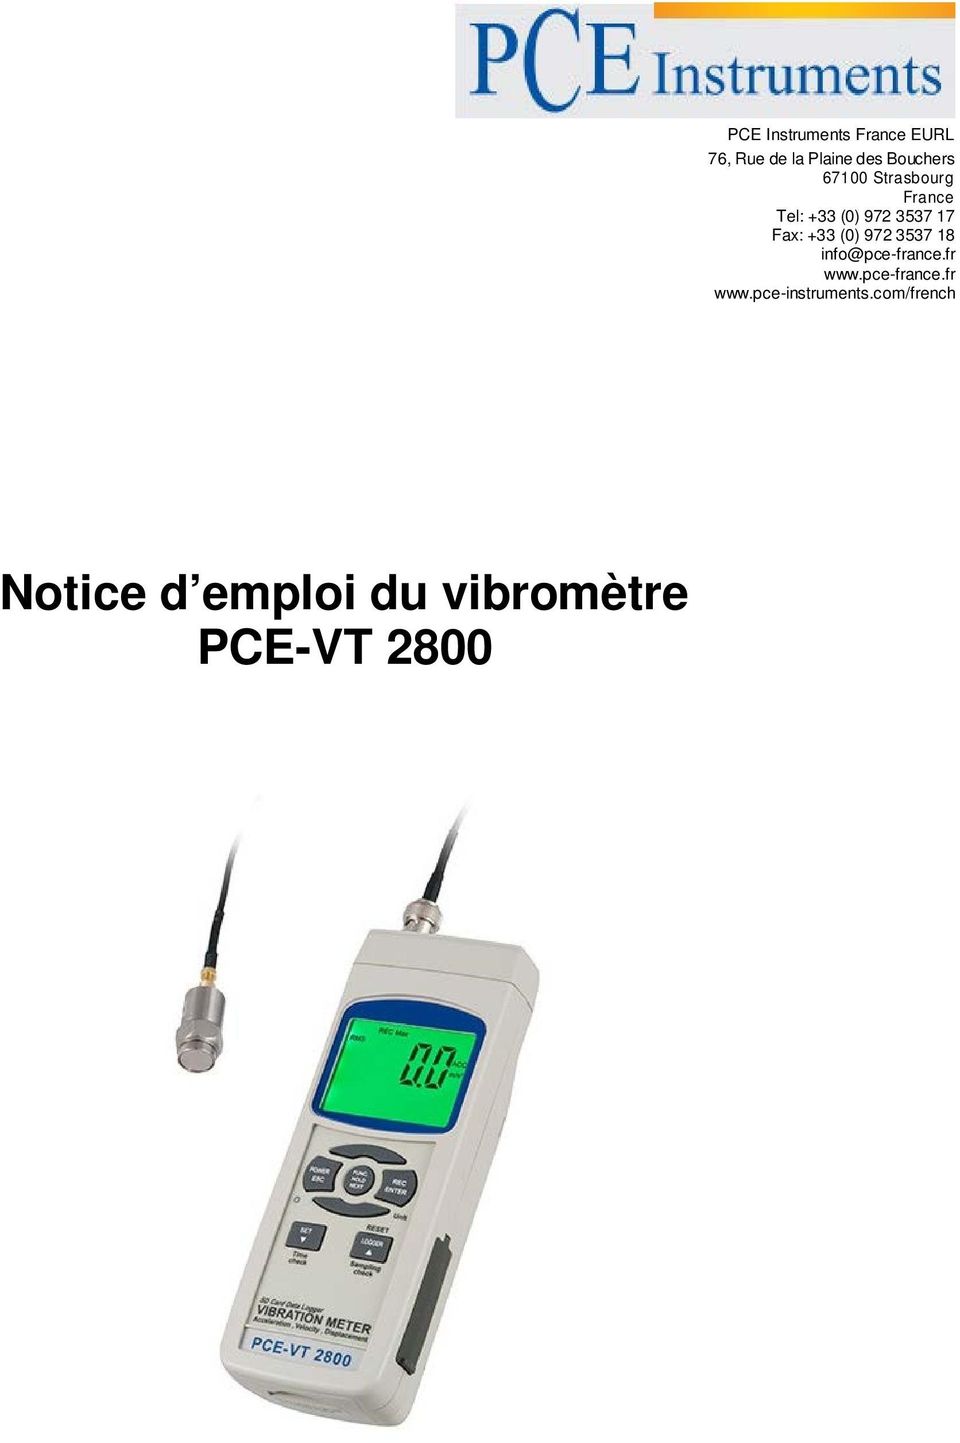 972 3537 18 info@pce-france.fr www.pce-france.fr www.pce-instruments.